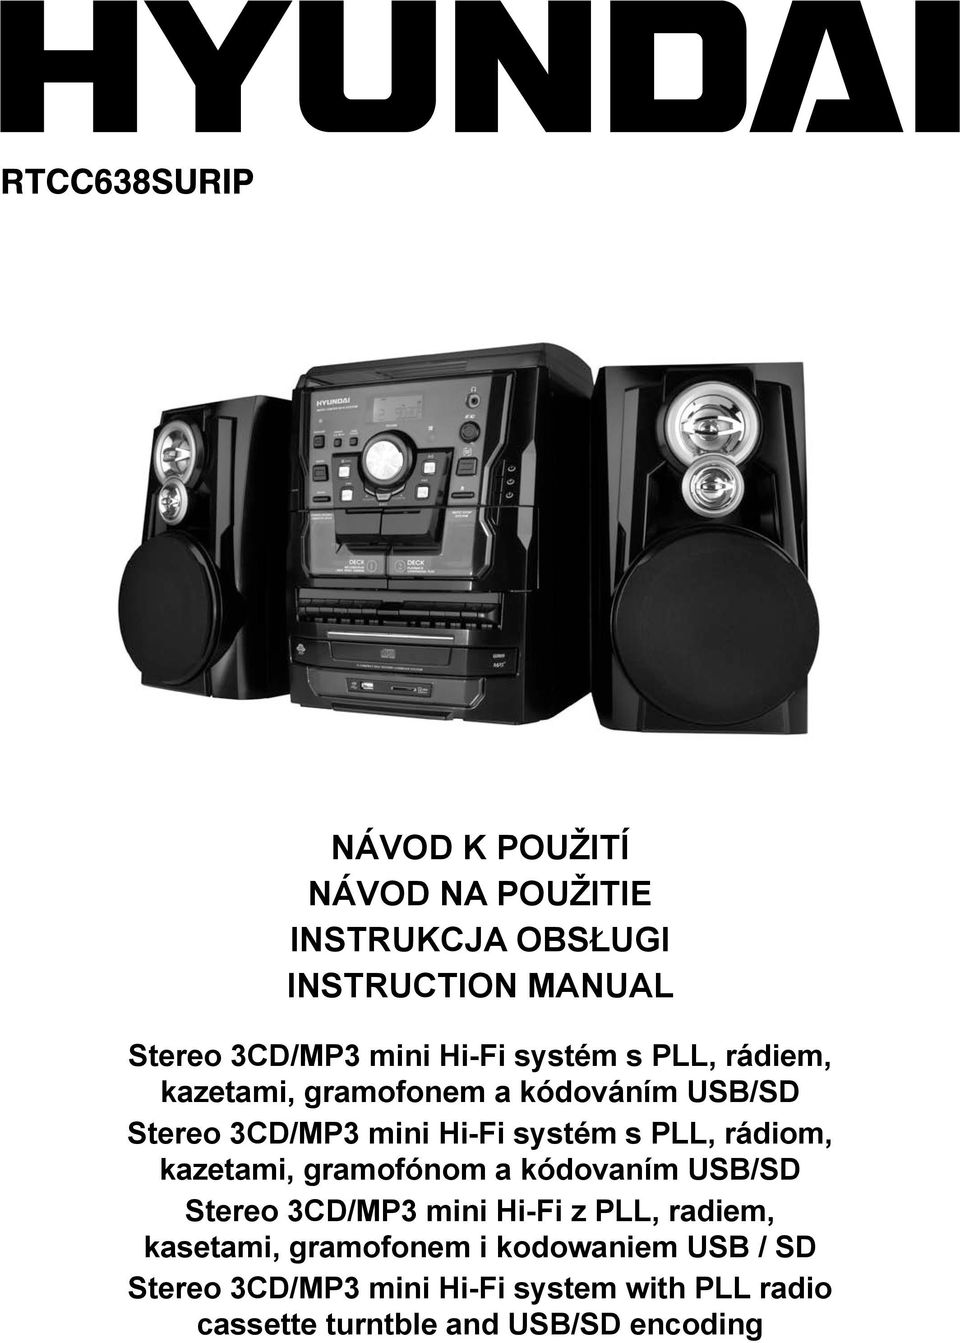 rádiom, kazetami, gramofónom a kódovaním USB/SD Stereo 3CD/MP3 mini Hi-Fi z PLL, radiem, kasetami,